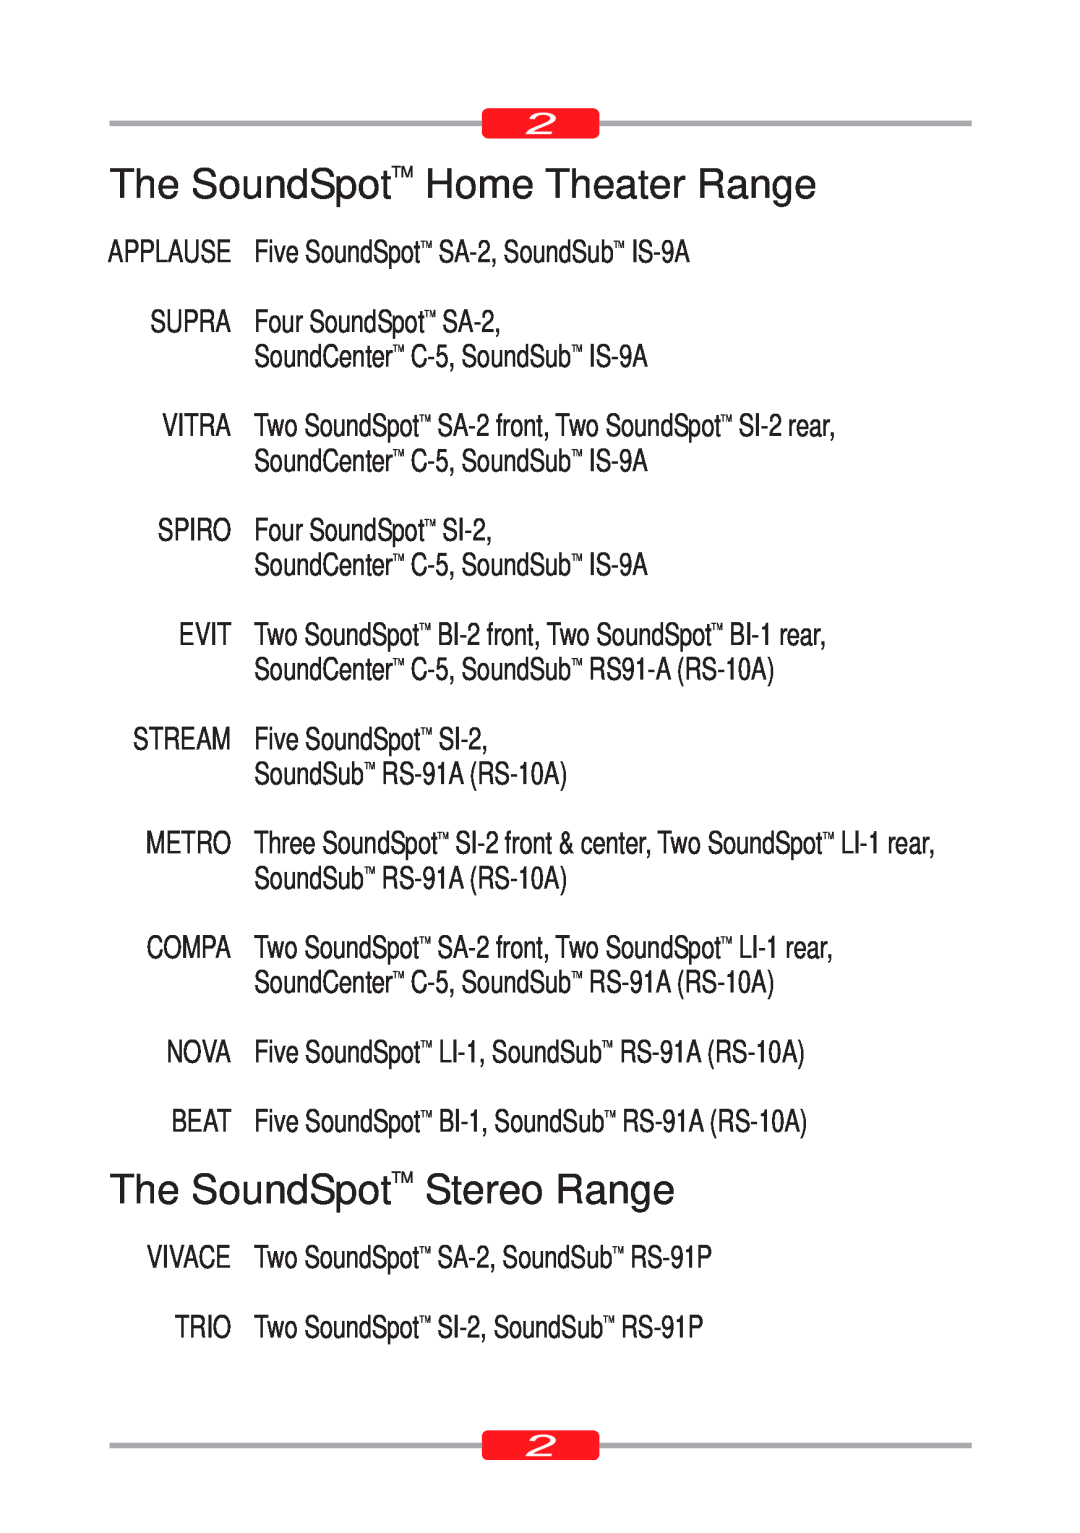 Morel ST-90, ST-95 owner manual The SoundSpotTM Home Theater Range, The SoundSpotTM Stereo Range 